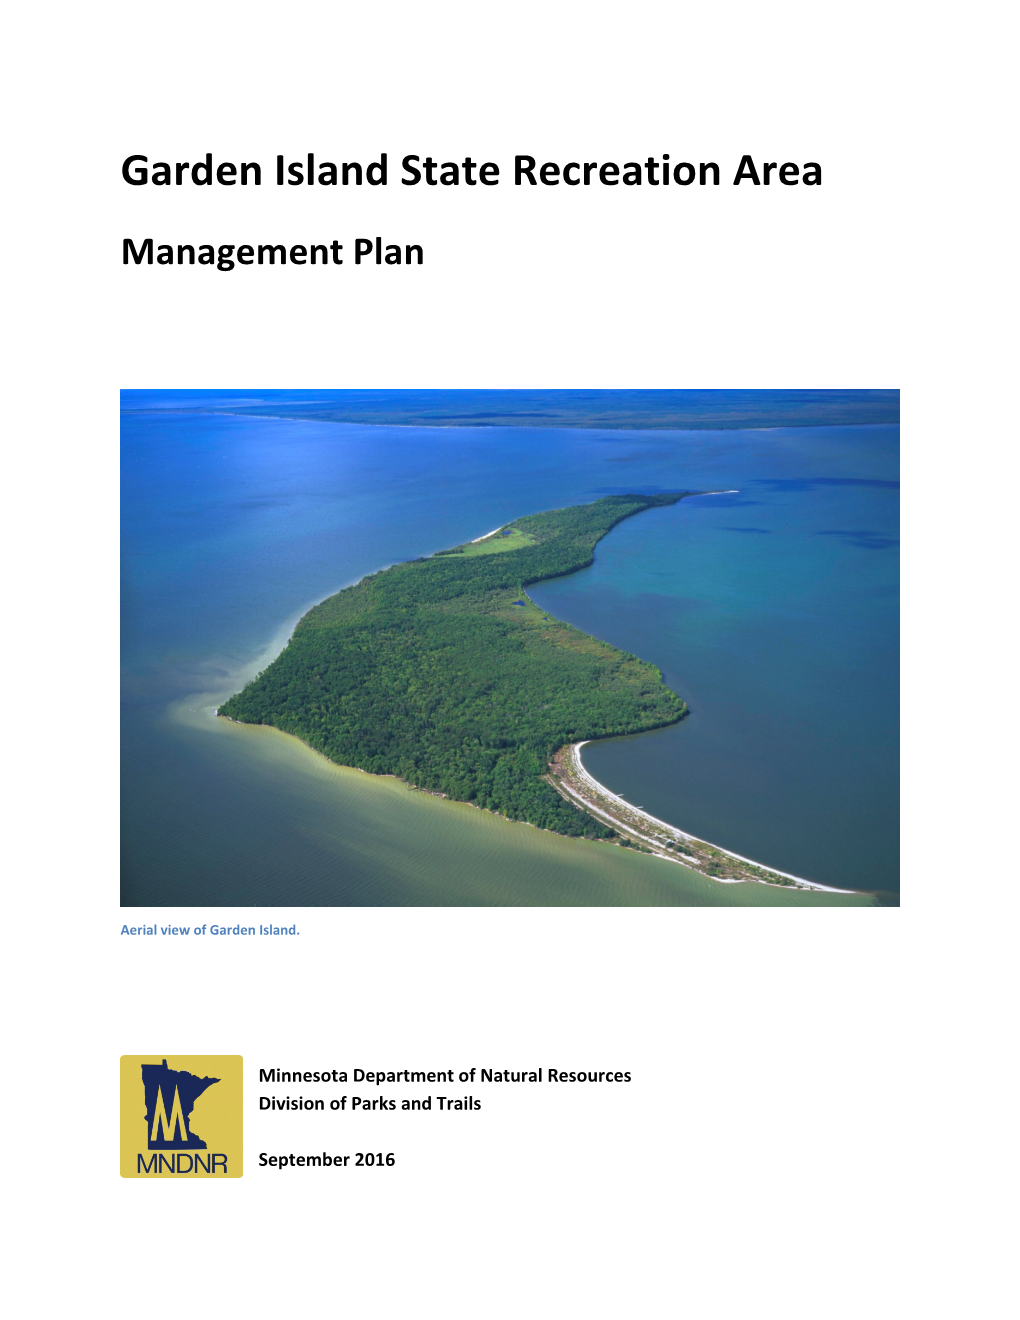 Garden Island State Recreation Area Management Plan